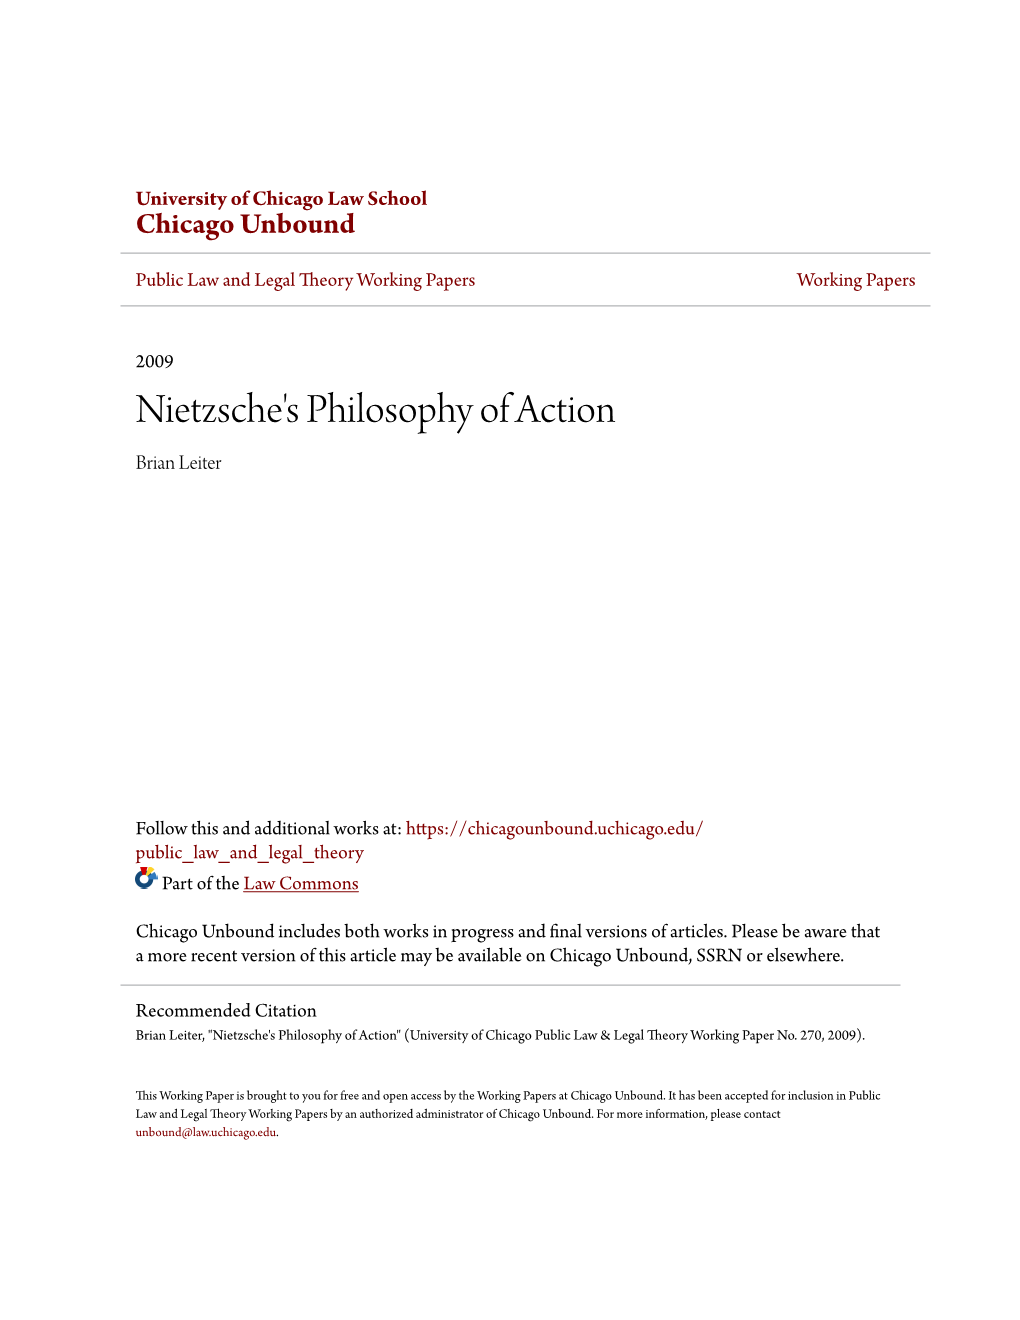 Nietzsche's Philosophy of Action Brian Leiter